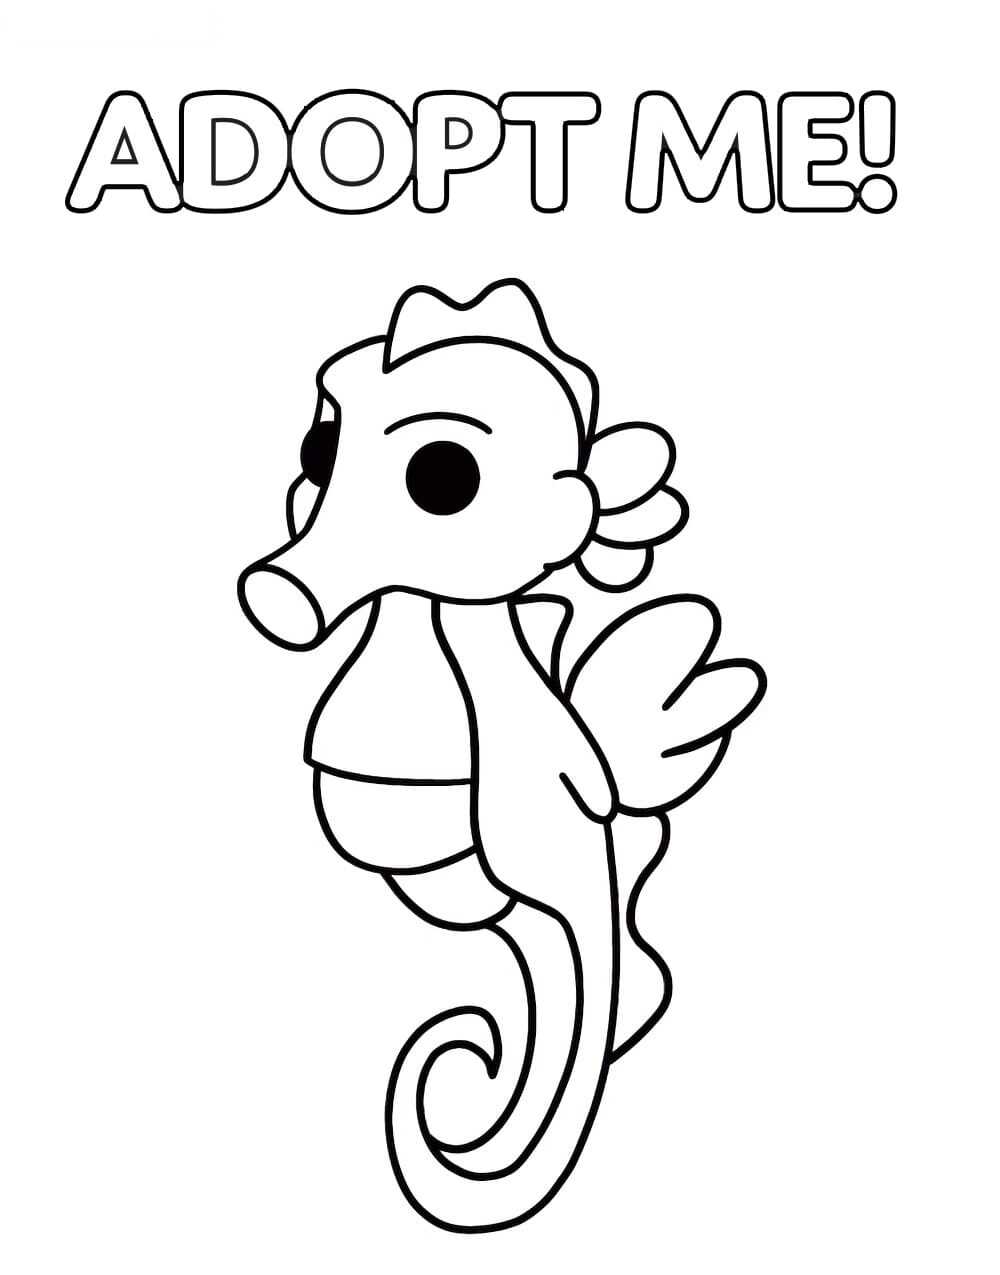 L'hippocampe de Adopt me a un museau allongé et sa queue se courbe vers son corps de Adopt me